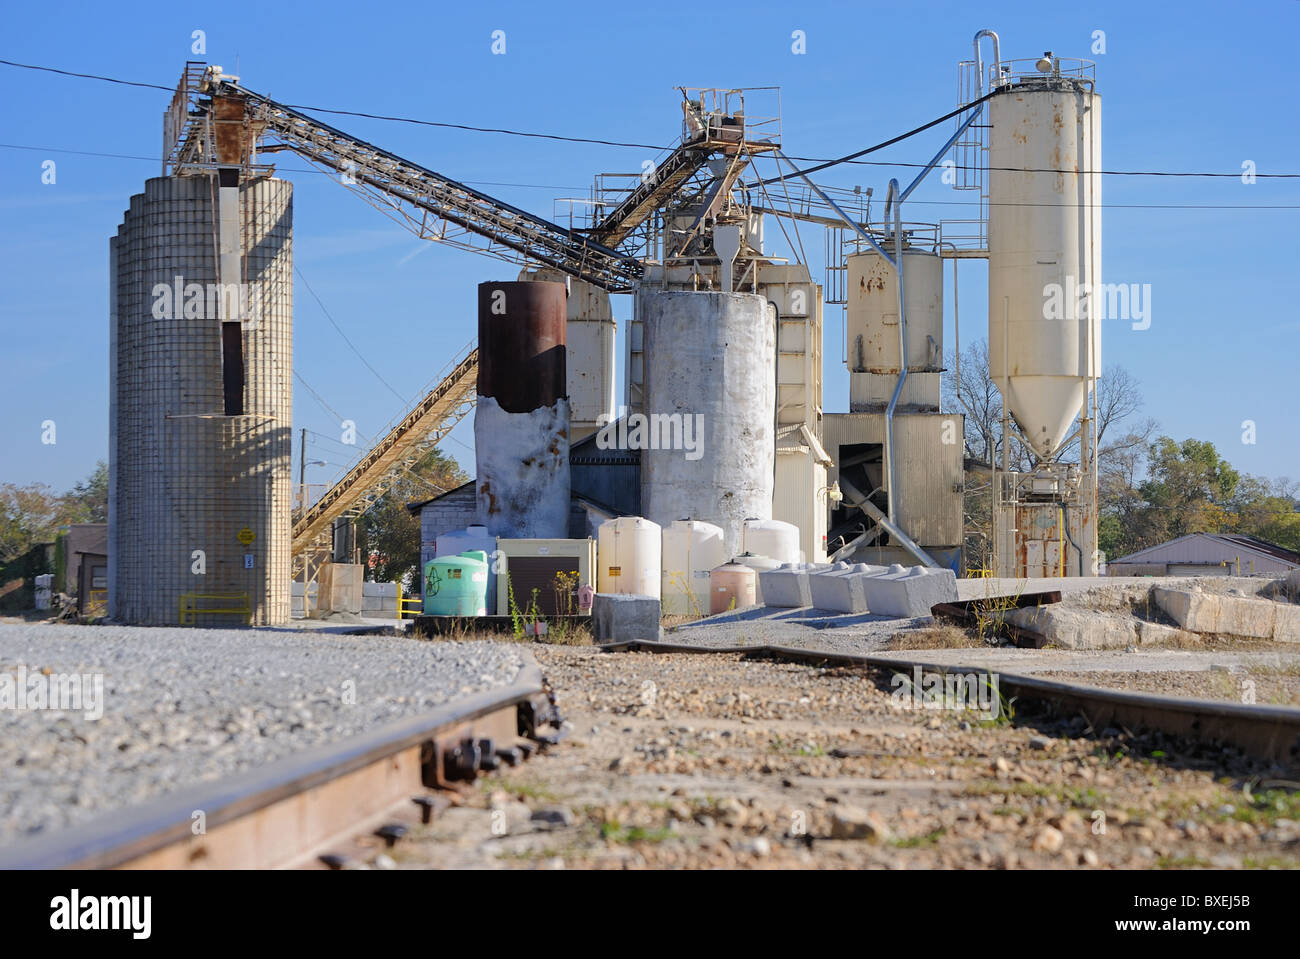 Un cemento industriale impianto di lavorazione. Foto Stock